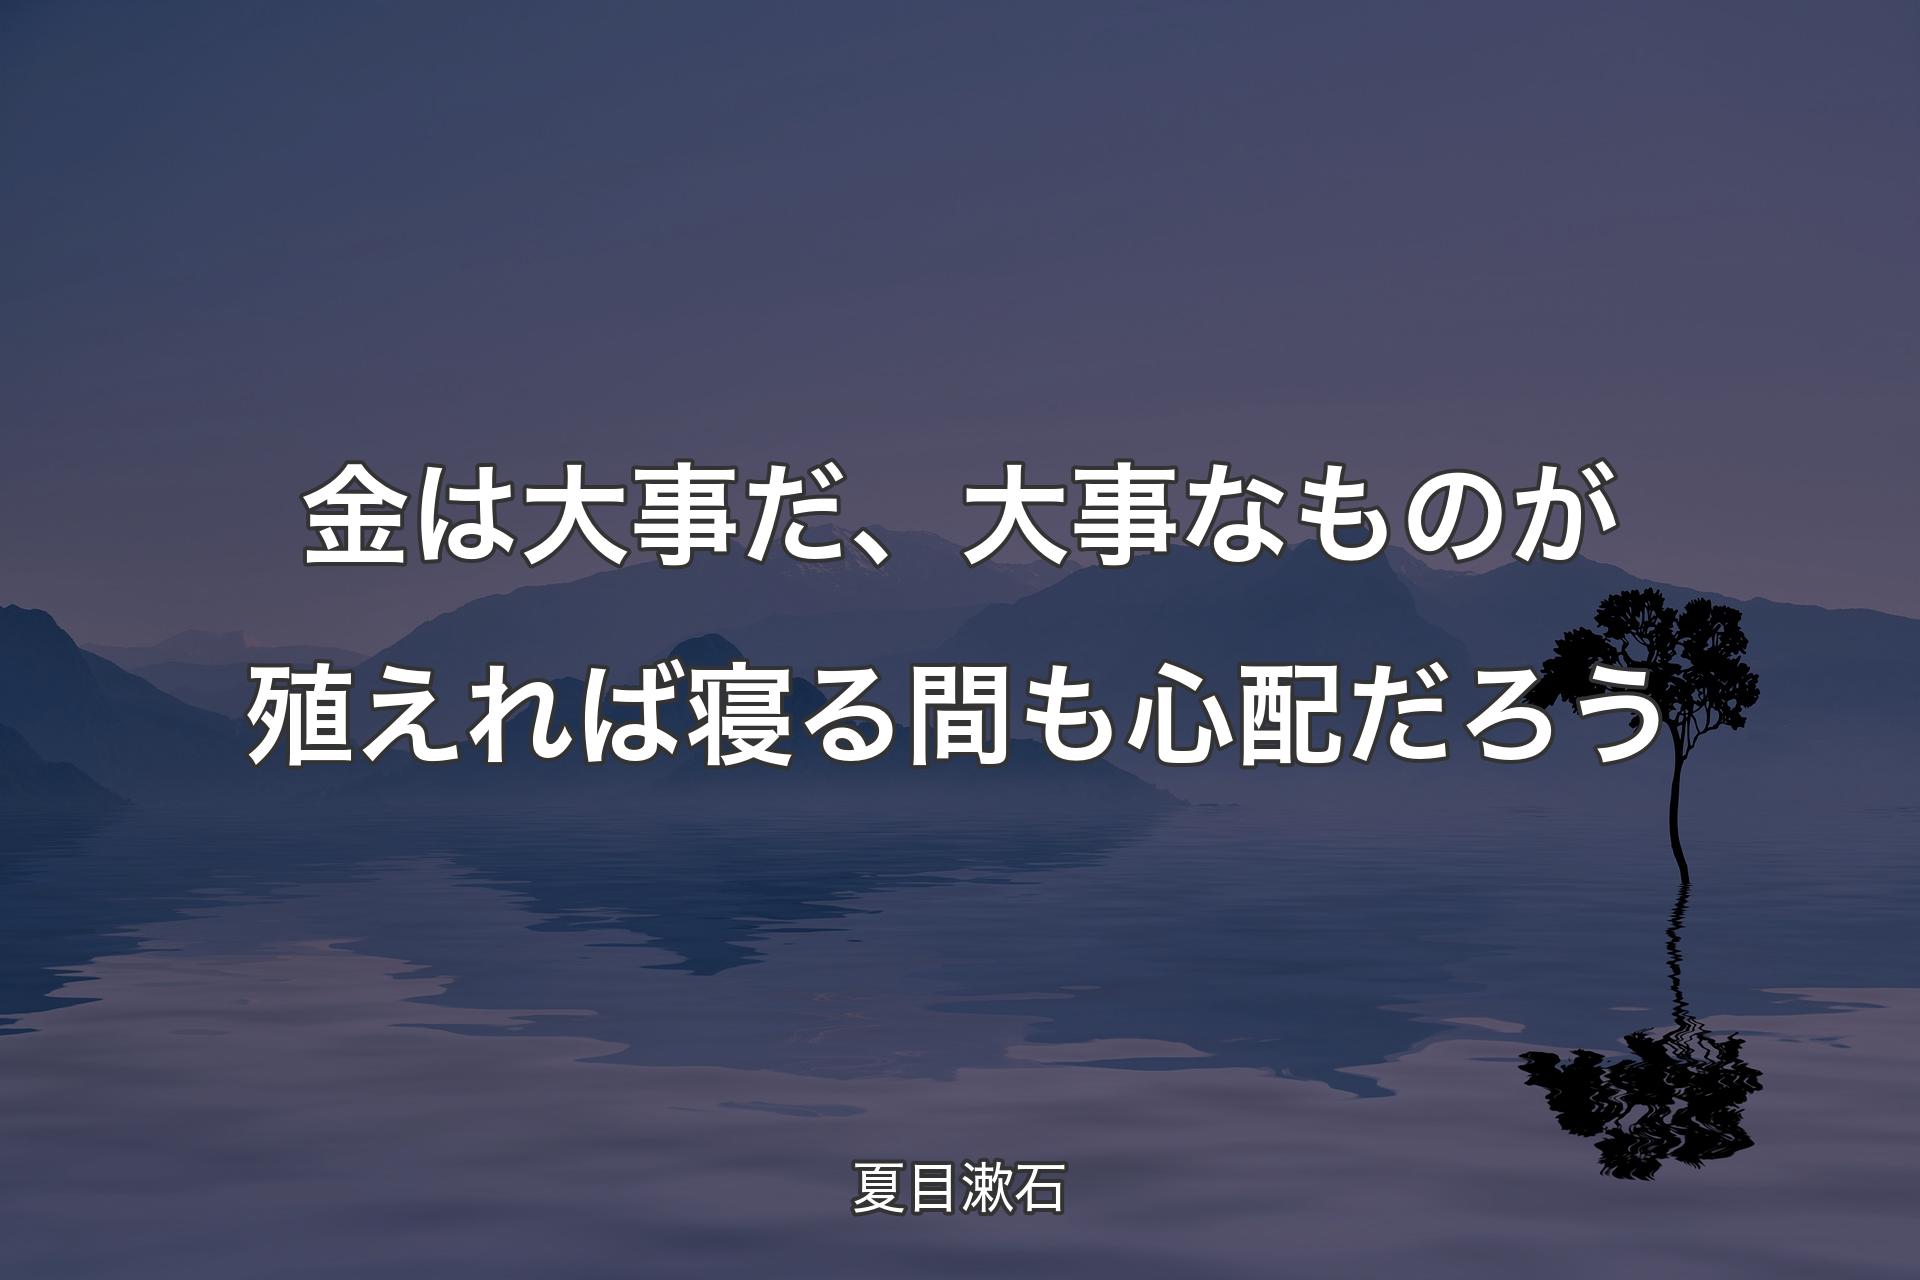 金は大事だ、大事なものが殖えれば寝る間も心配だろう - 夏目漱石